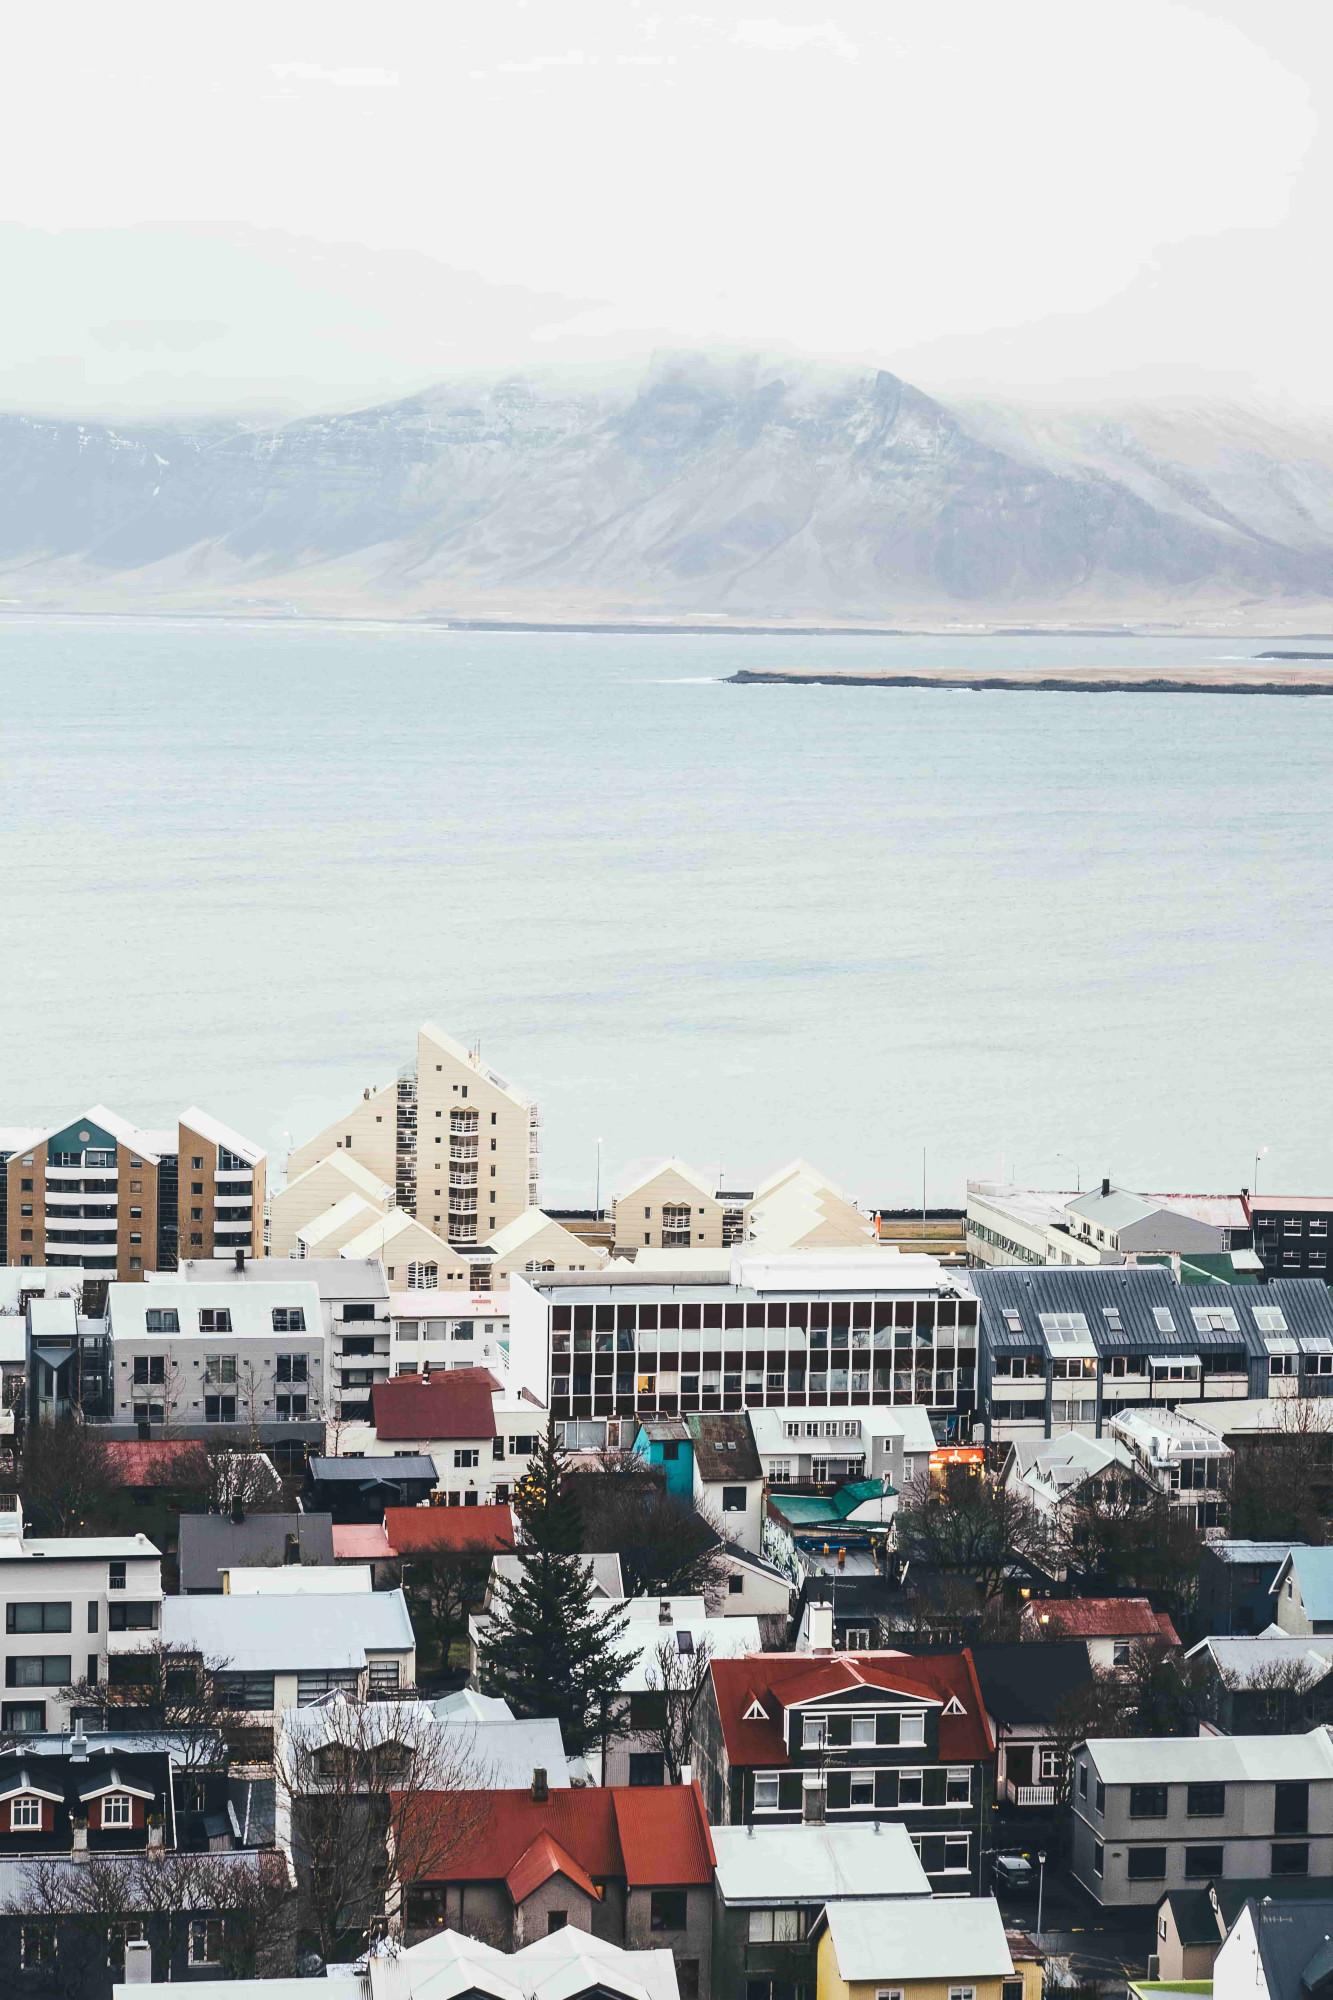 ijsland reykjavik gekleurde huizen zee bergen